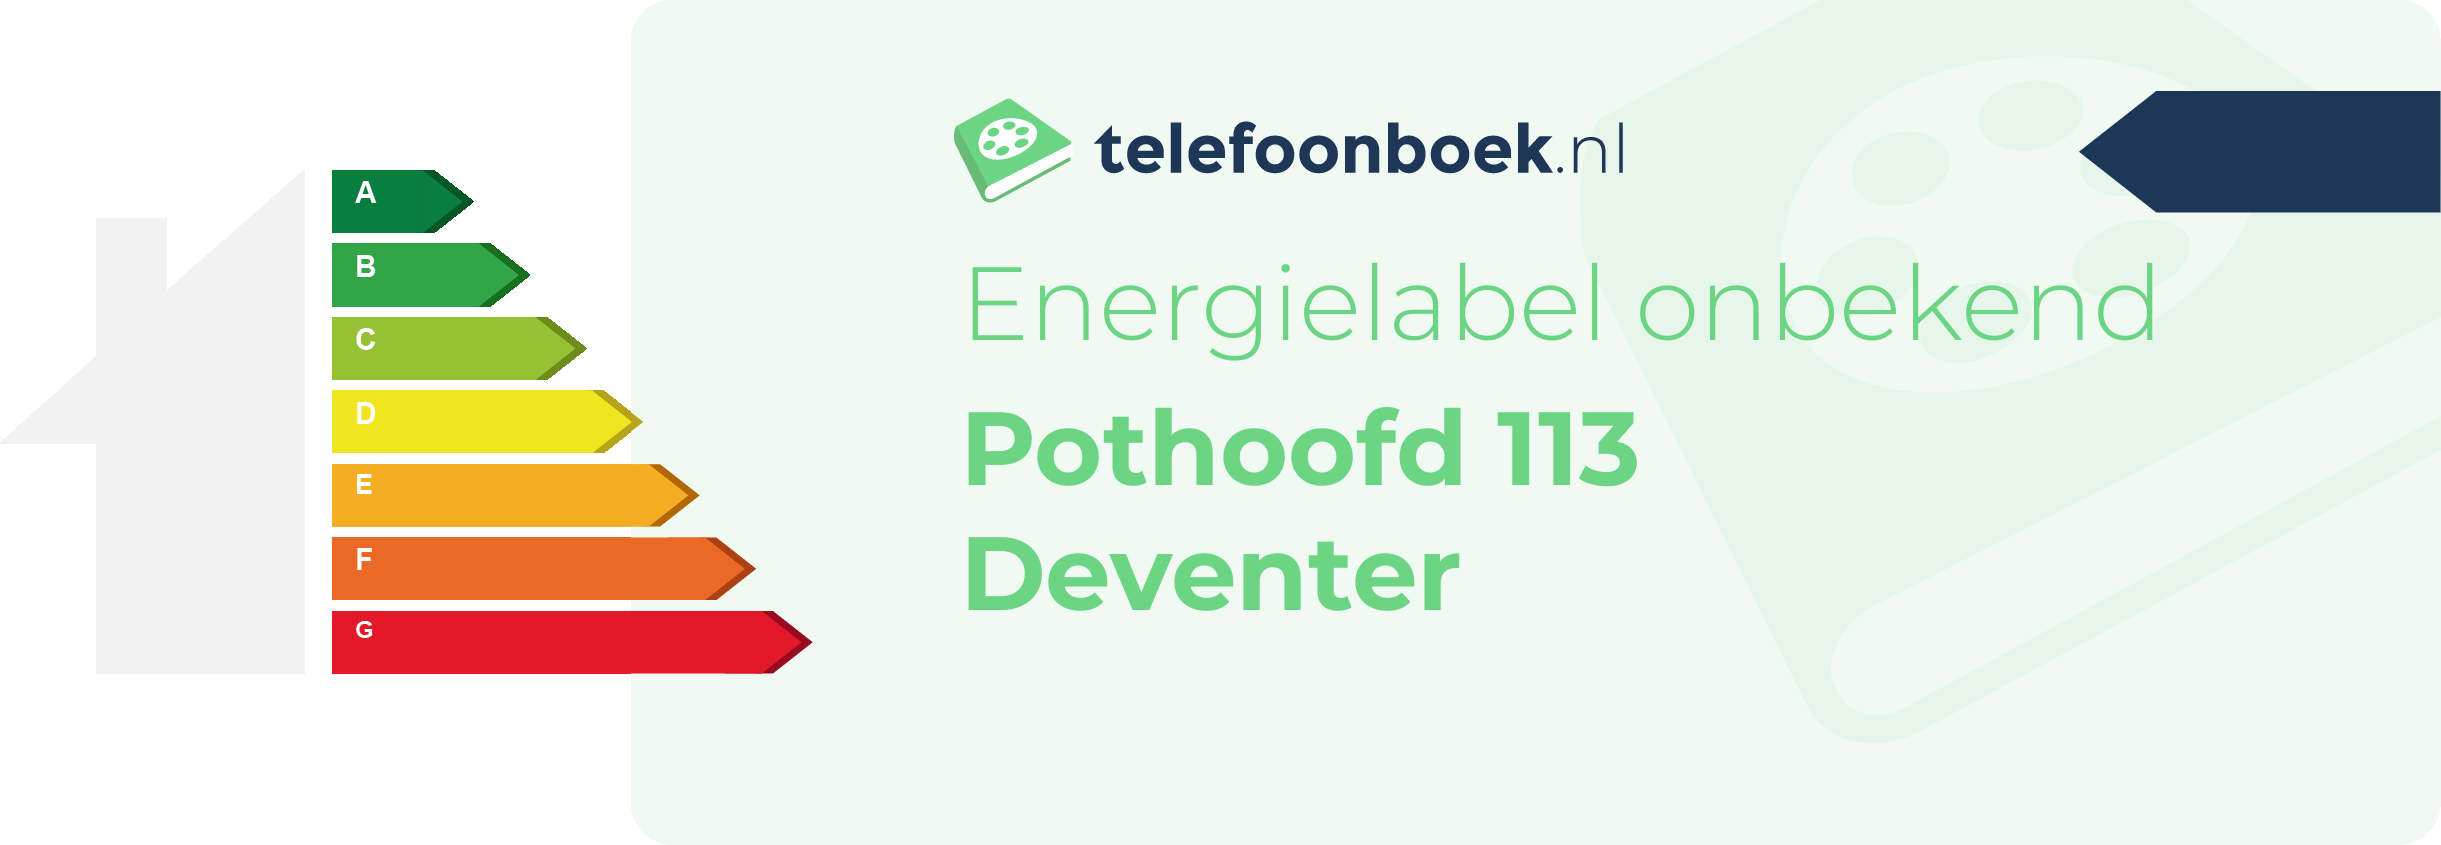 Energielabel Pothoofd 113 Deventer